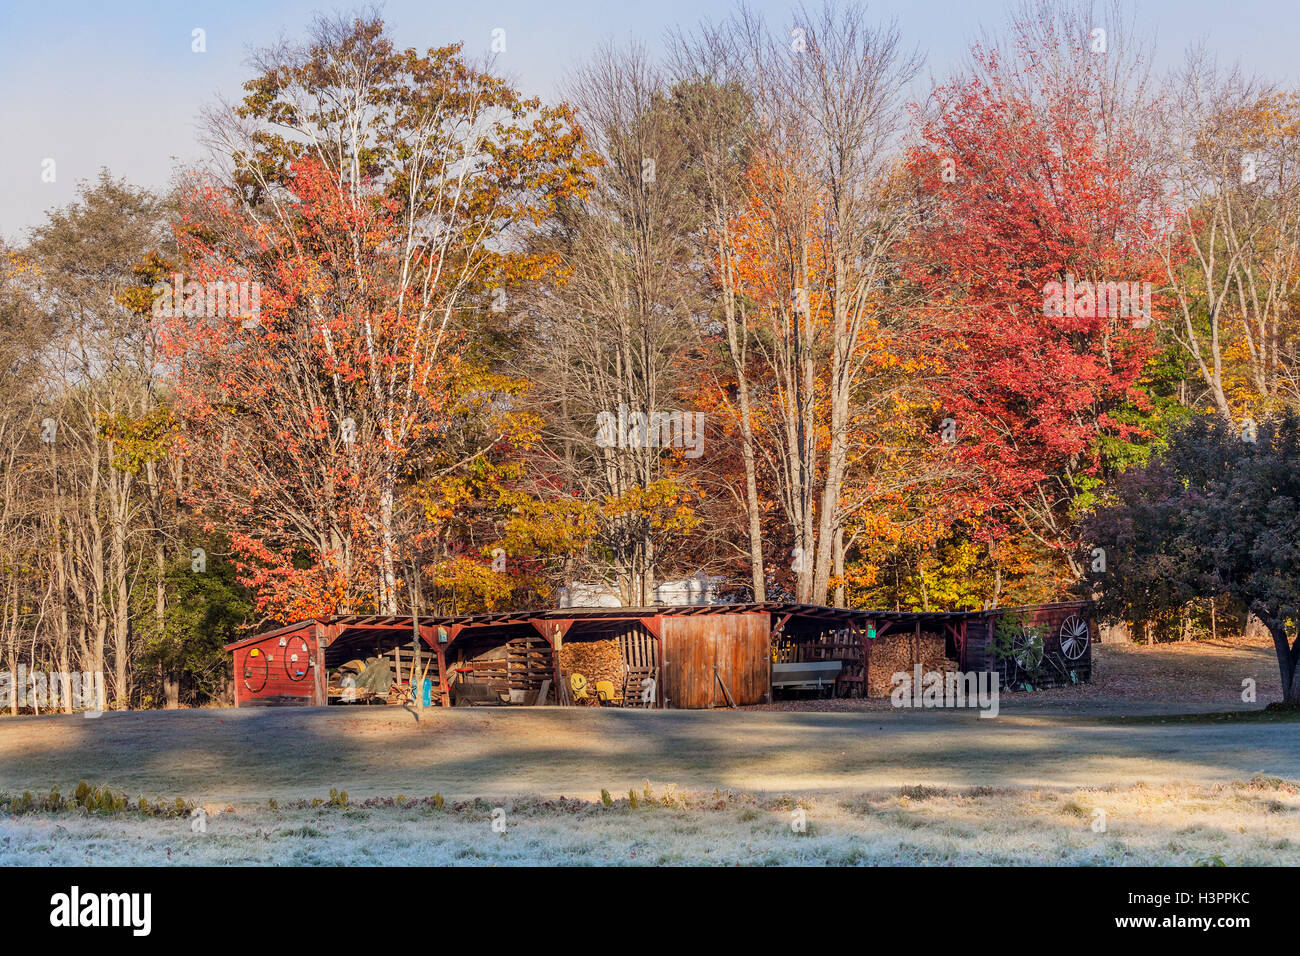 El paisaje de un granero lleno de elementos agrícolas y en invierno calefacción de leña, colorido follaje de otoño y la escarcha en el suelo Foto de stock